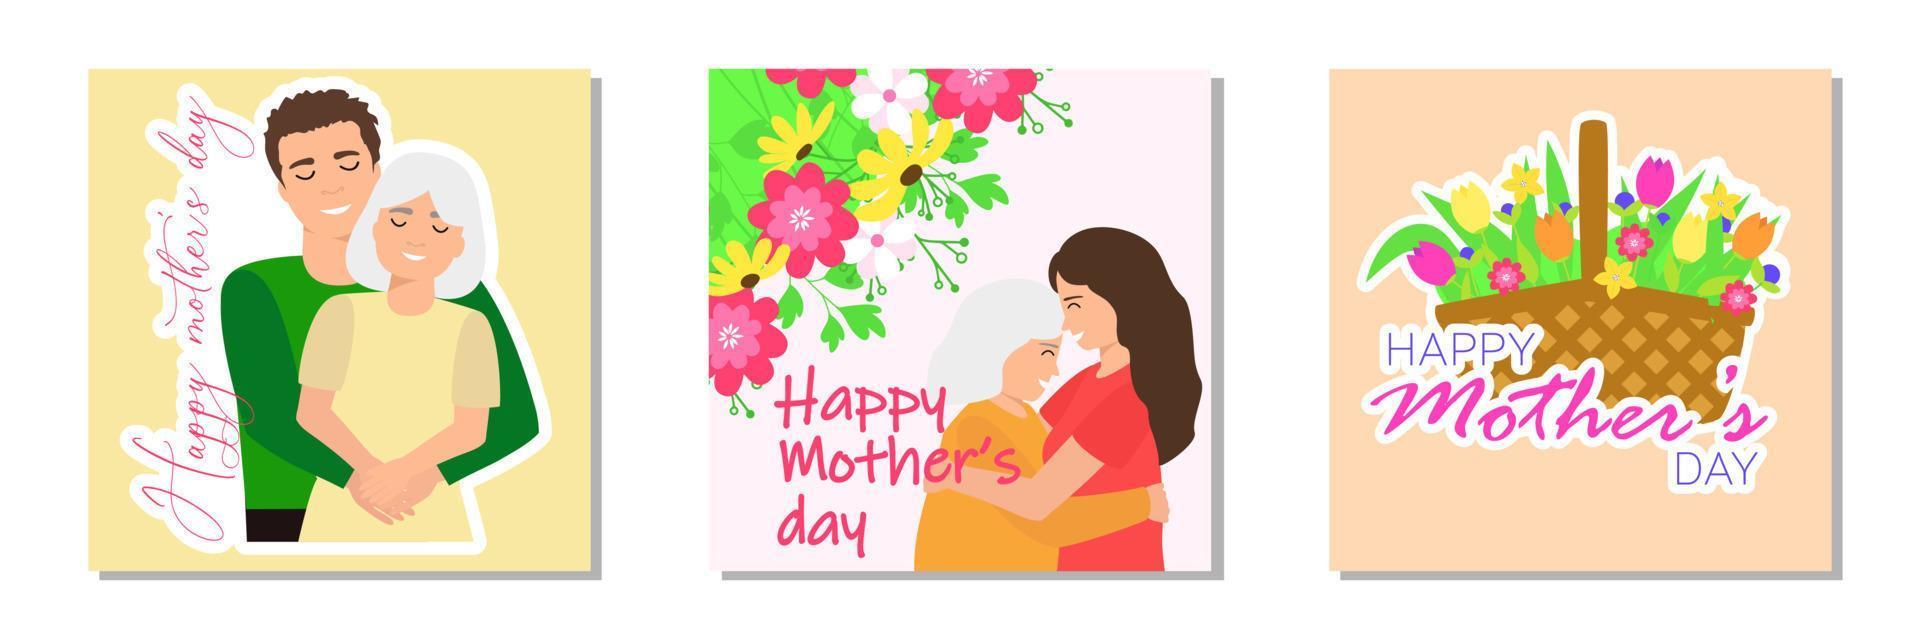 conjunto de saludo tarjeta para contento de la madre día. madre con niño. ramo de flores de flores vector ilustración.